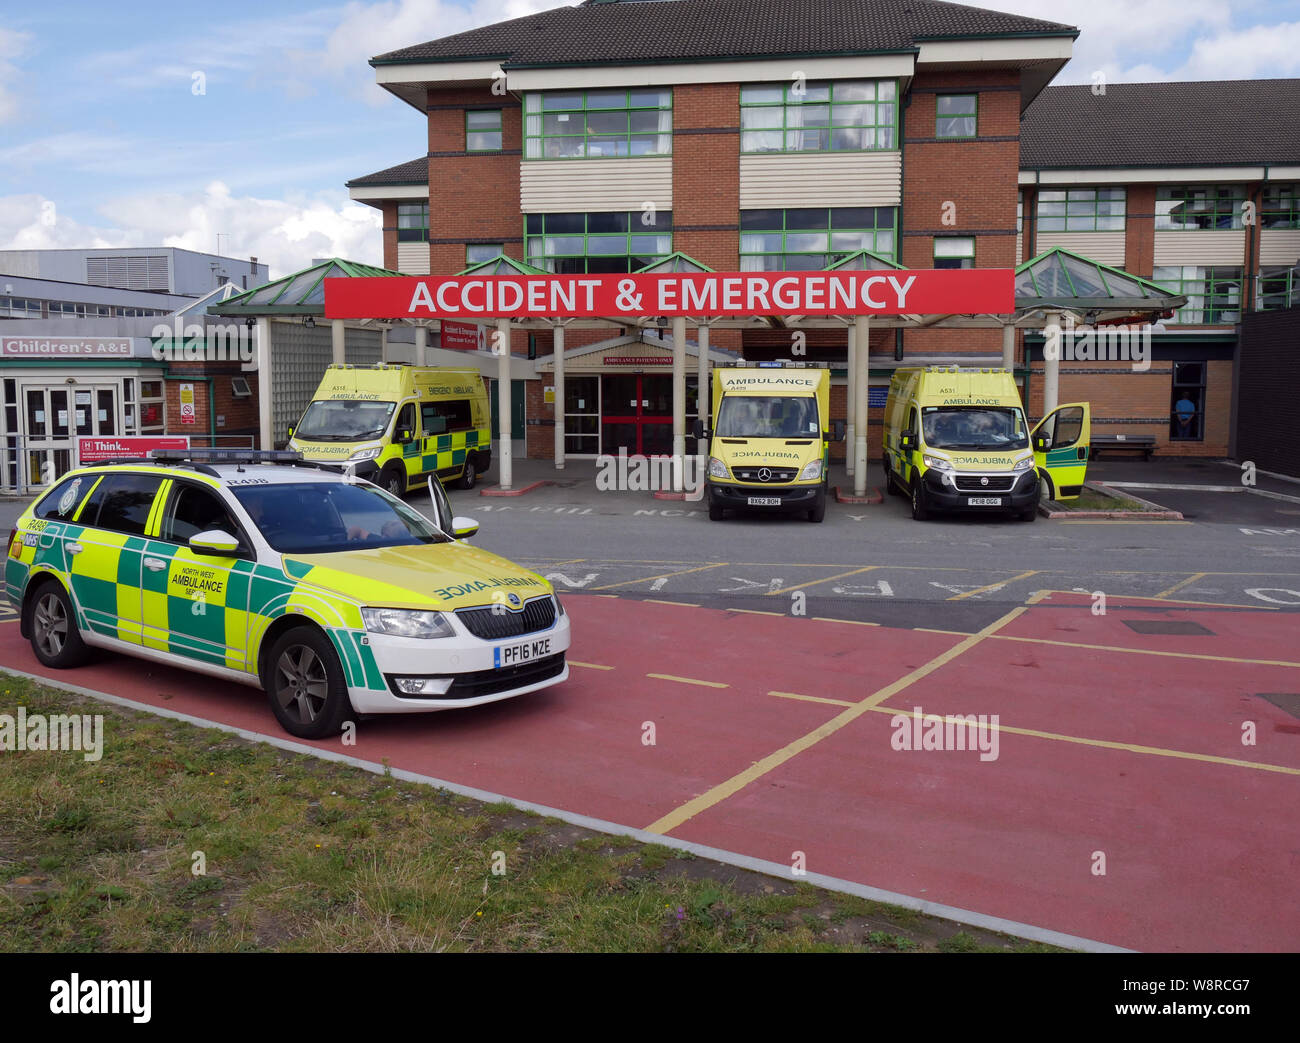 A&E Dept presso il Royal Bolton Hospital, a nord-ovest di servizio ambulanza veicoli, Bolton, Lancashire, Greater Manchester, Inghilterra UK fotografia DON TONGE Foto Stock